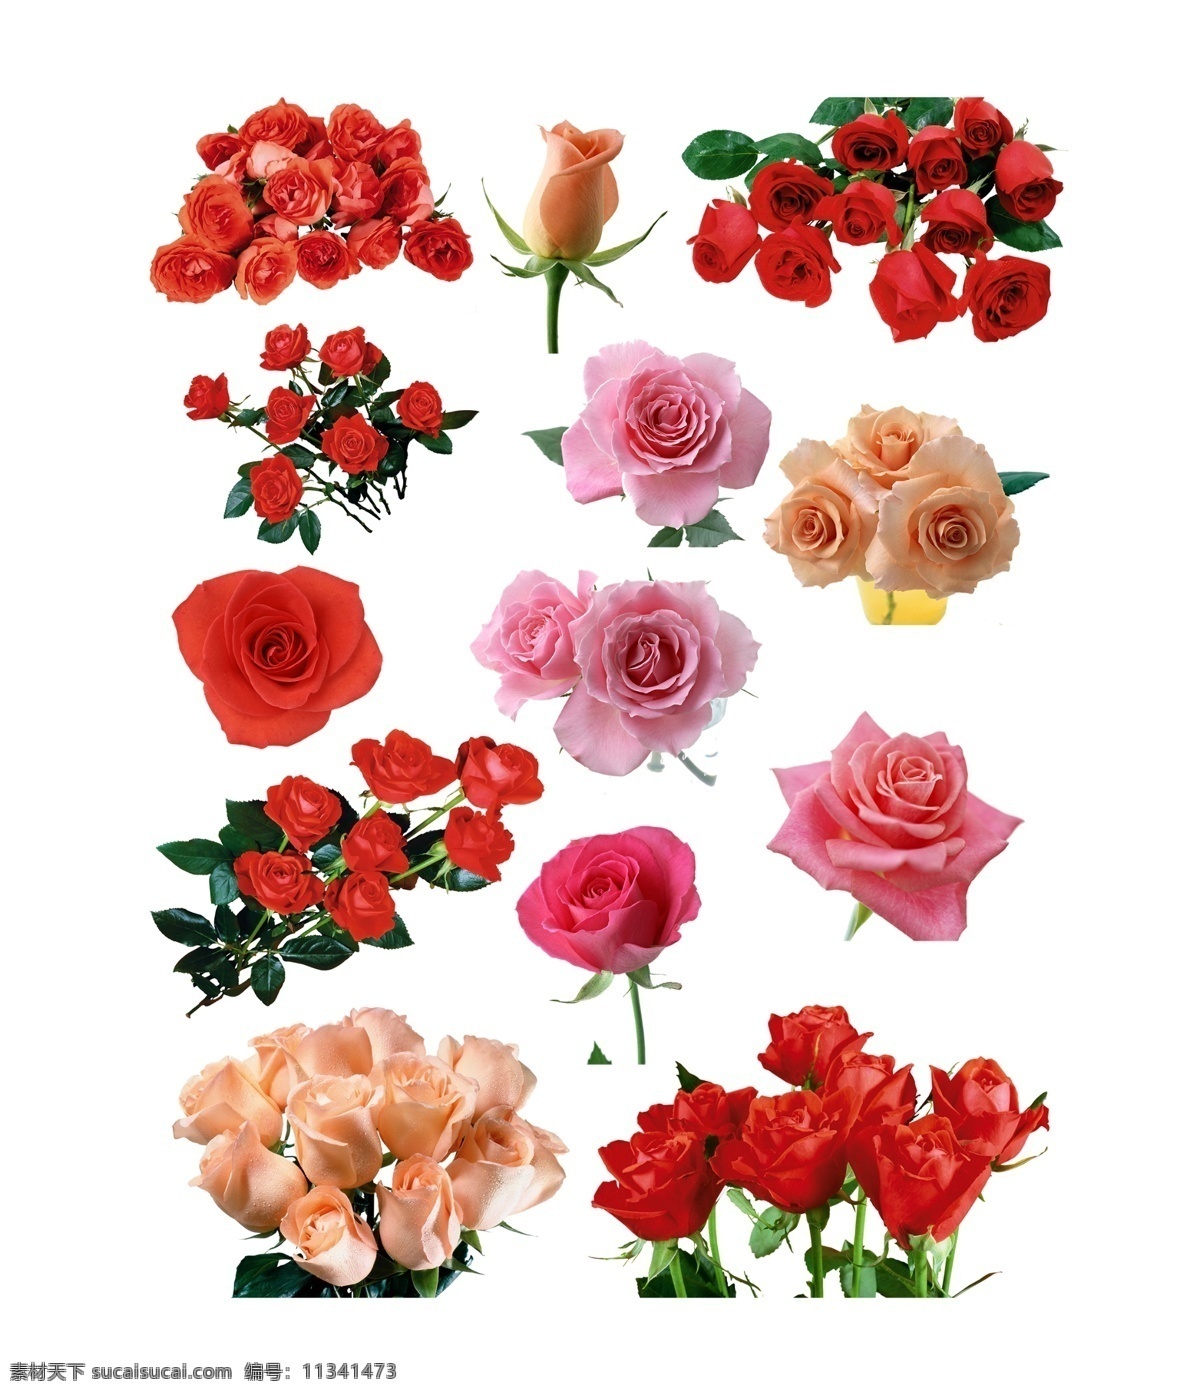 高清玫瑰素材 玫瑰花图片 玫瑰花 玫瑰花素材 水彩玫瑰 玫瑰花朵 玫瑰 玫瑰素材